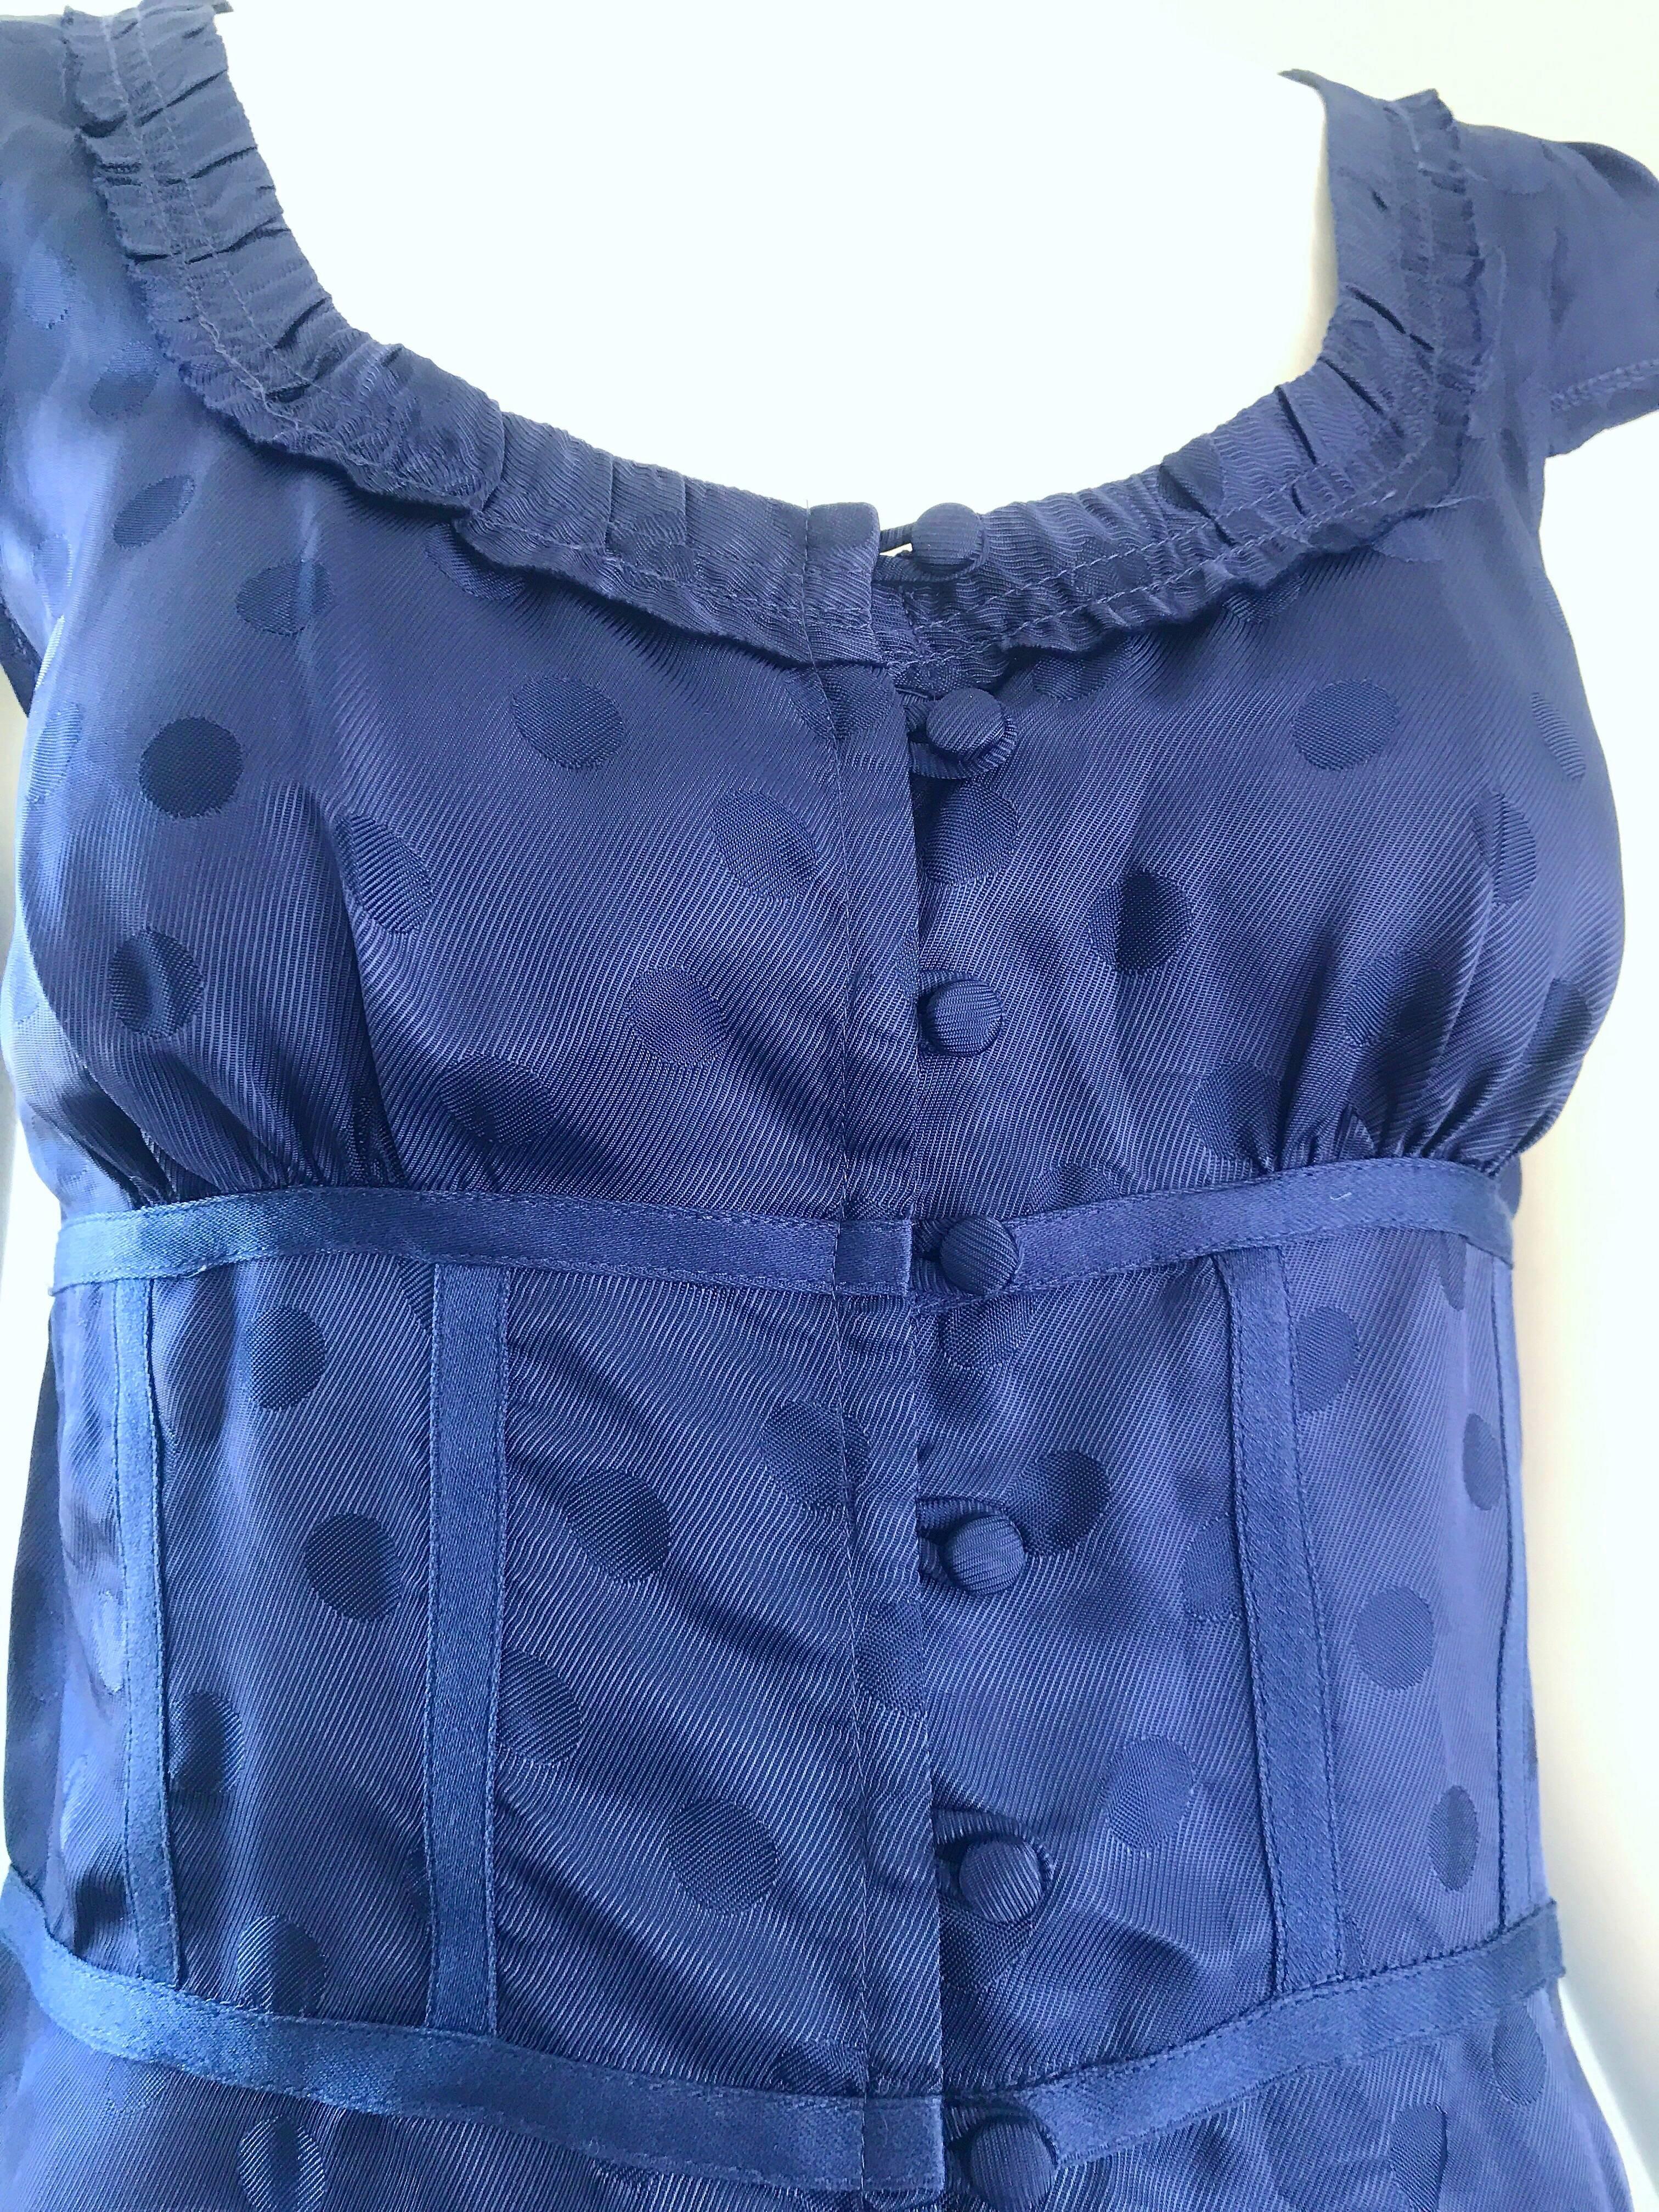 Marc Jacobs Marineblaues Seiden-Top mit gepunkteten Kapuzenärmeln und Kapuzenärmeln Größe 2 / 4 Bluse Top / Hemd (Blau) im Angebot